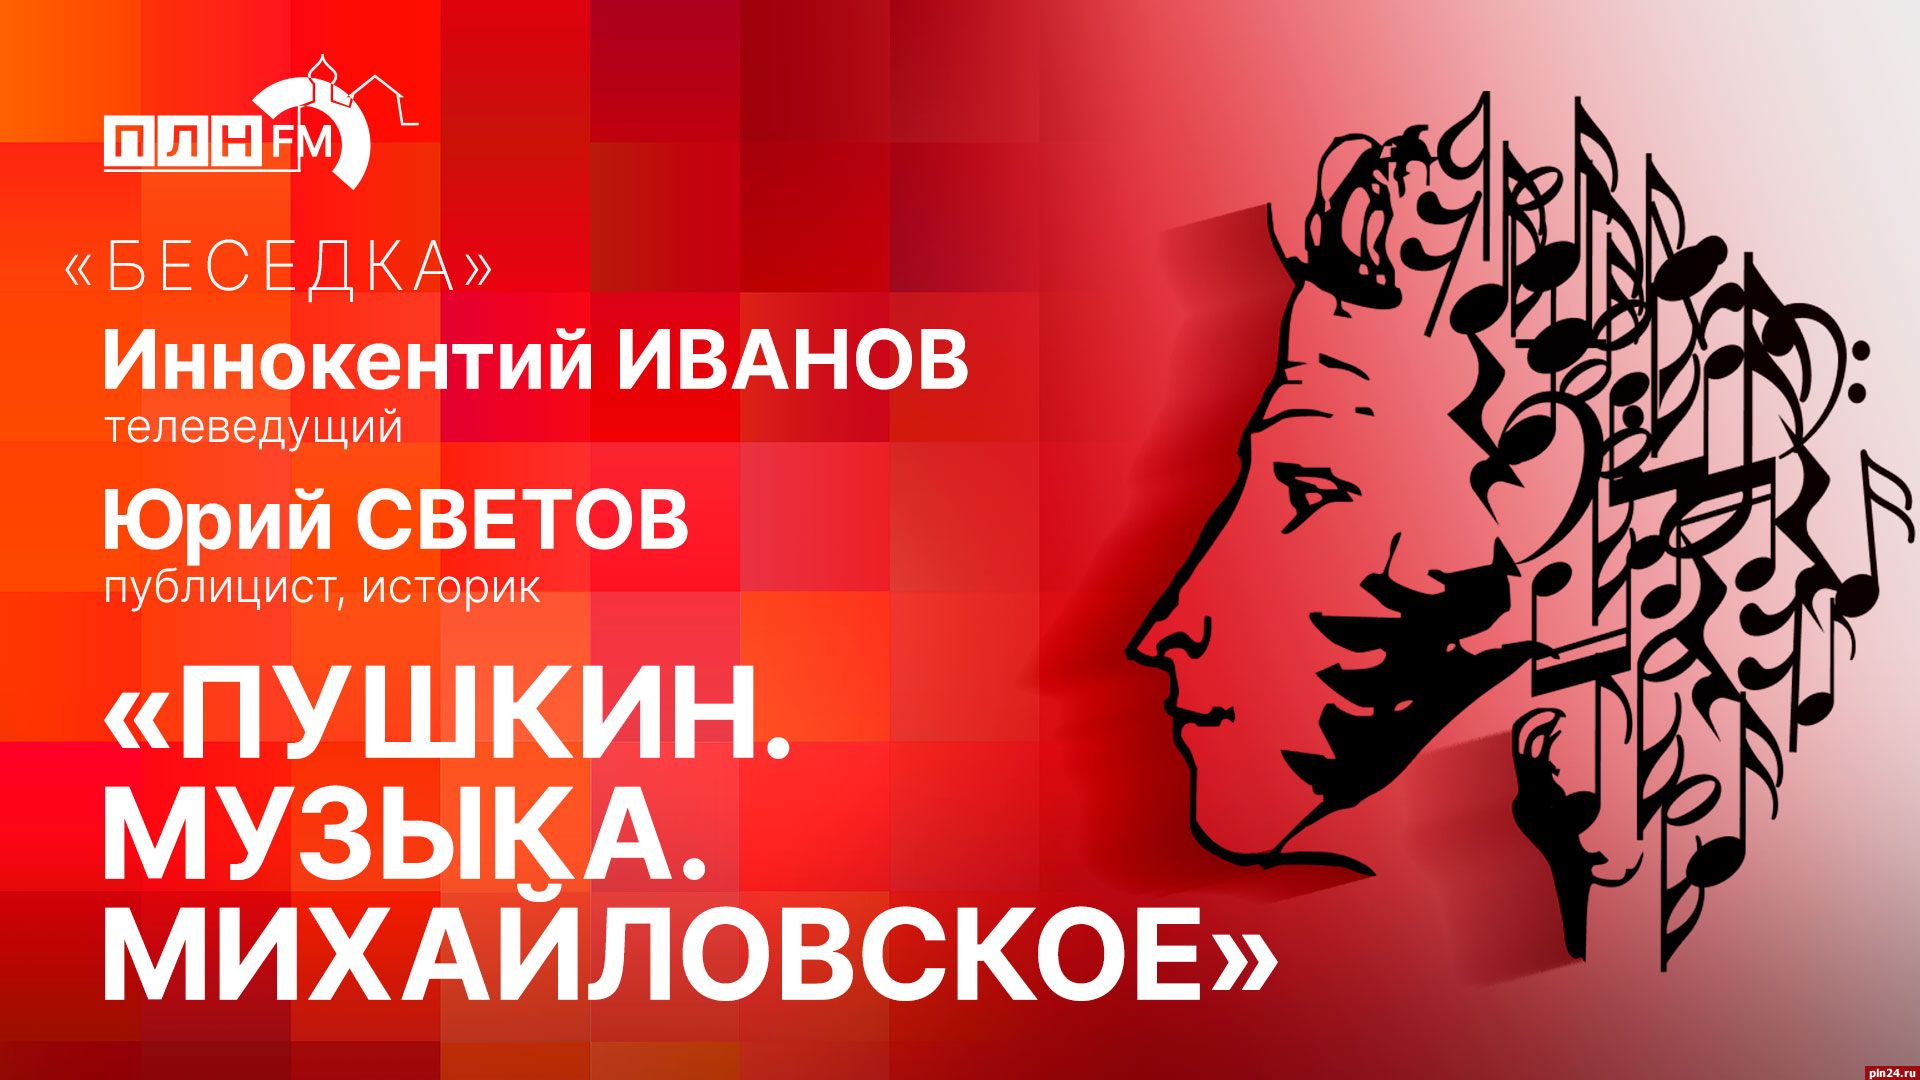 Начинается видеотрансляция программы «Беседка» о фестивале «Пушкин. Музыка. Михайловское»